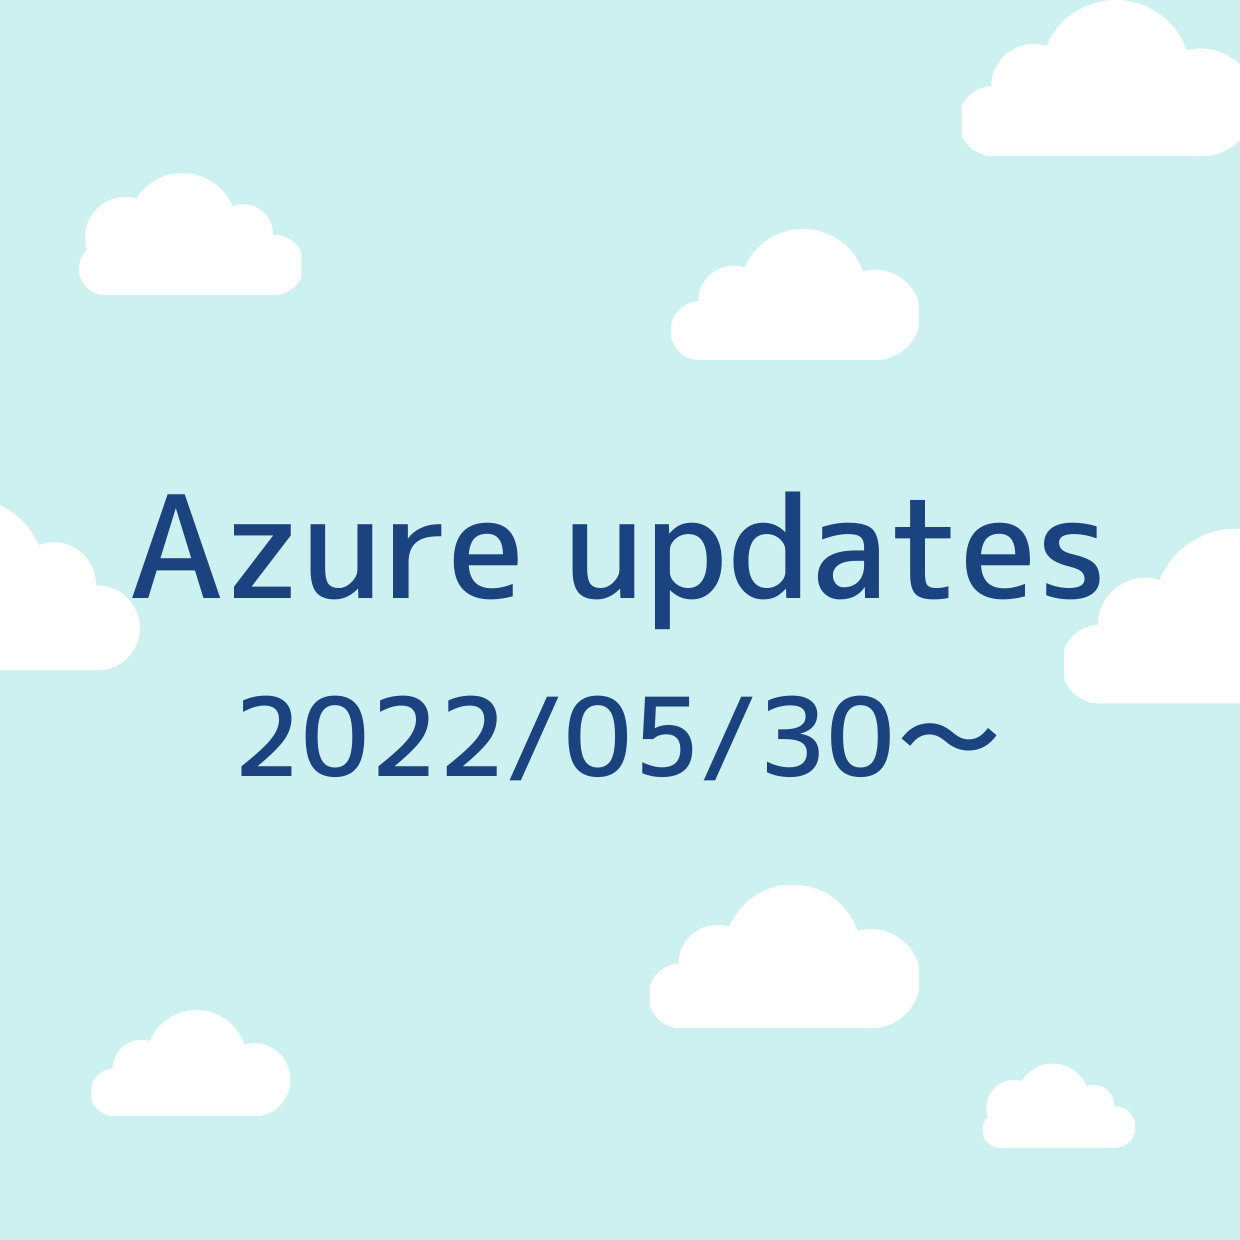 2022/05/30 週の Azure updates 日本語速報